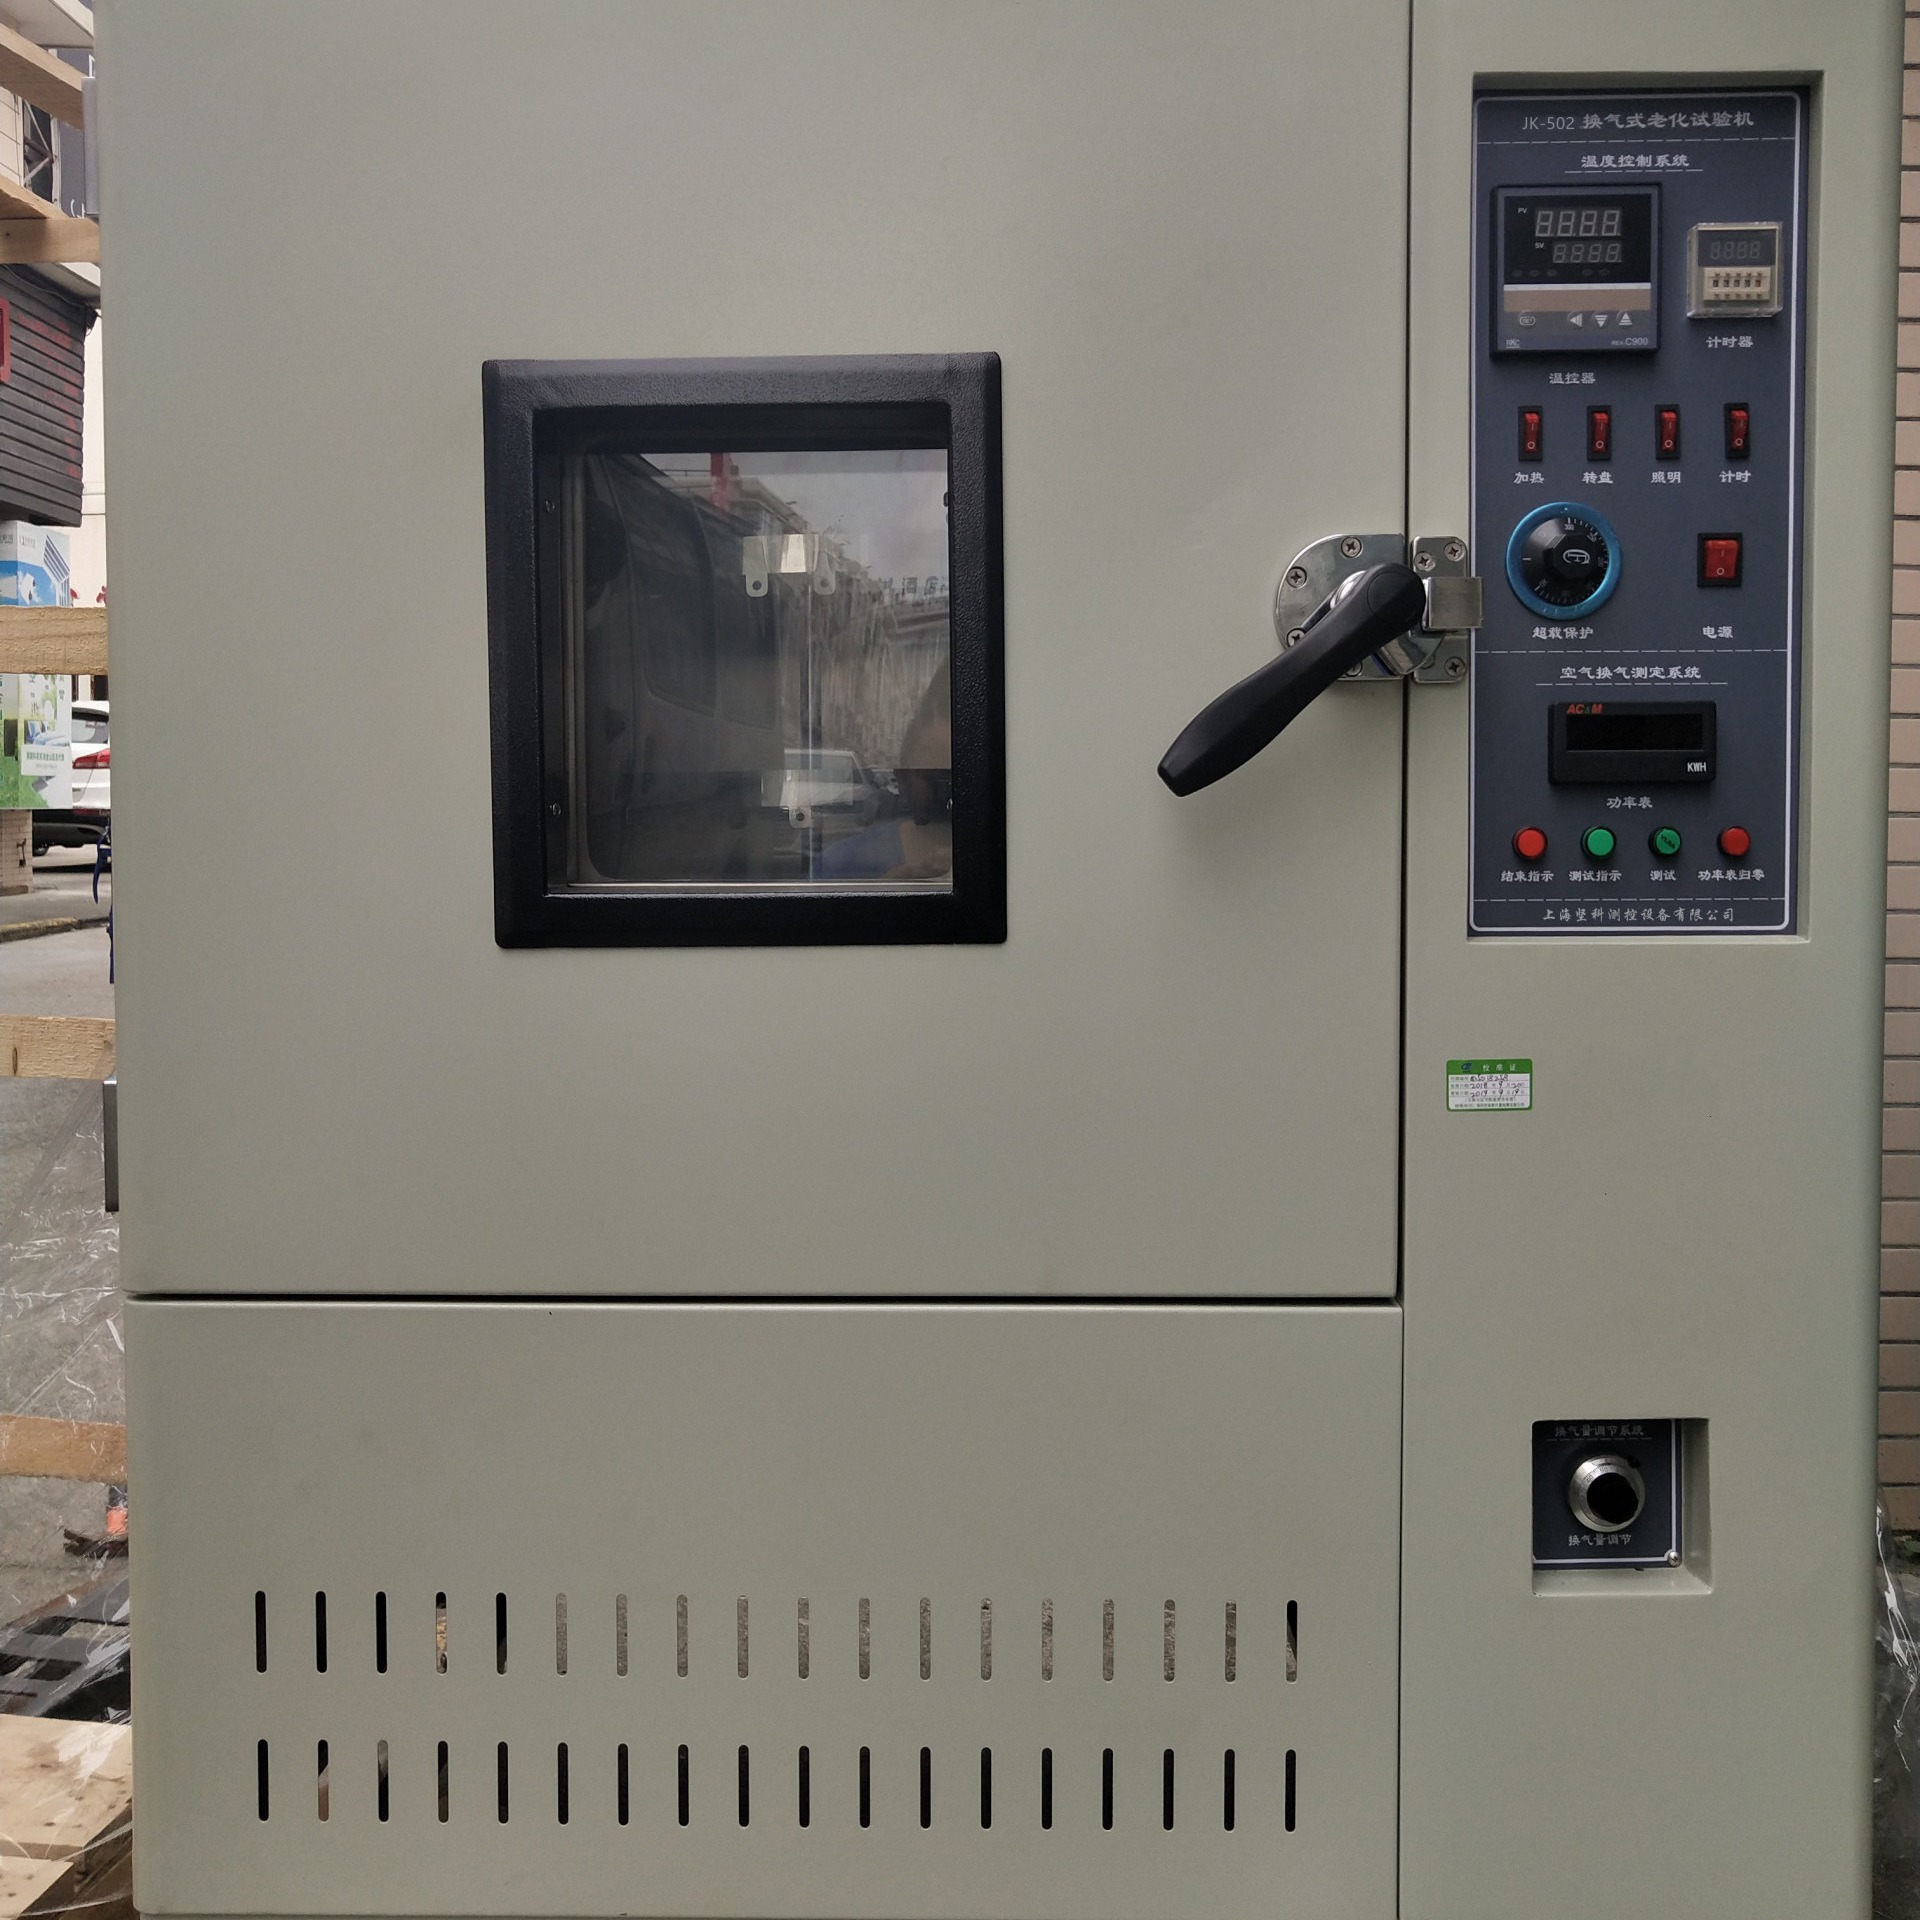 上海老化试验箱厂家  JK-502 换气式老化试验机  老化试验机,UL1581老化试验箱， 强制换气老化试验箱图片